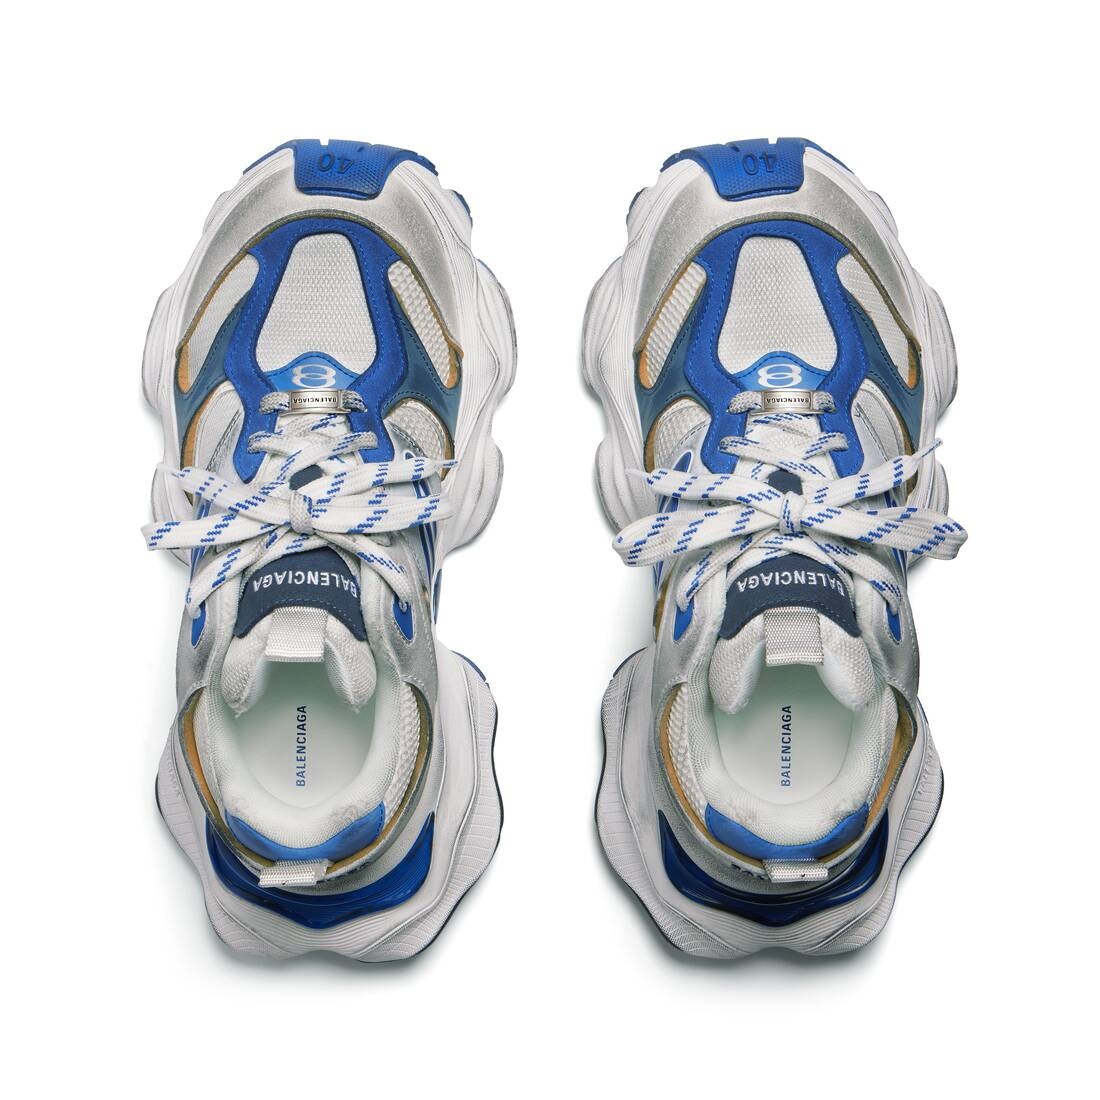 Men's Cargo Sneaker  in Grey/white/blue - 6